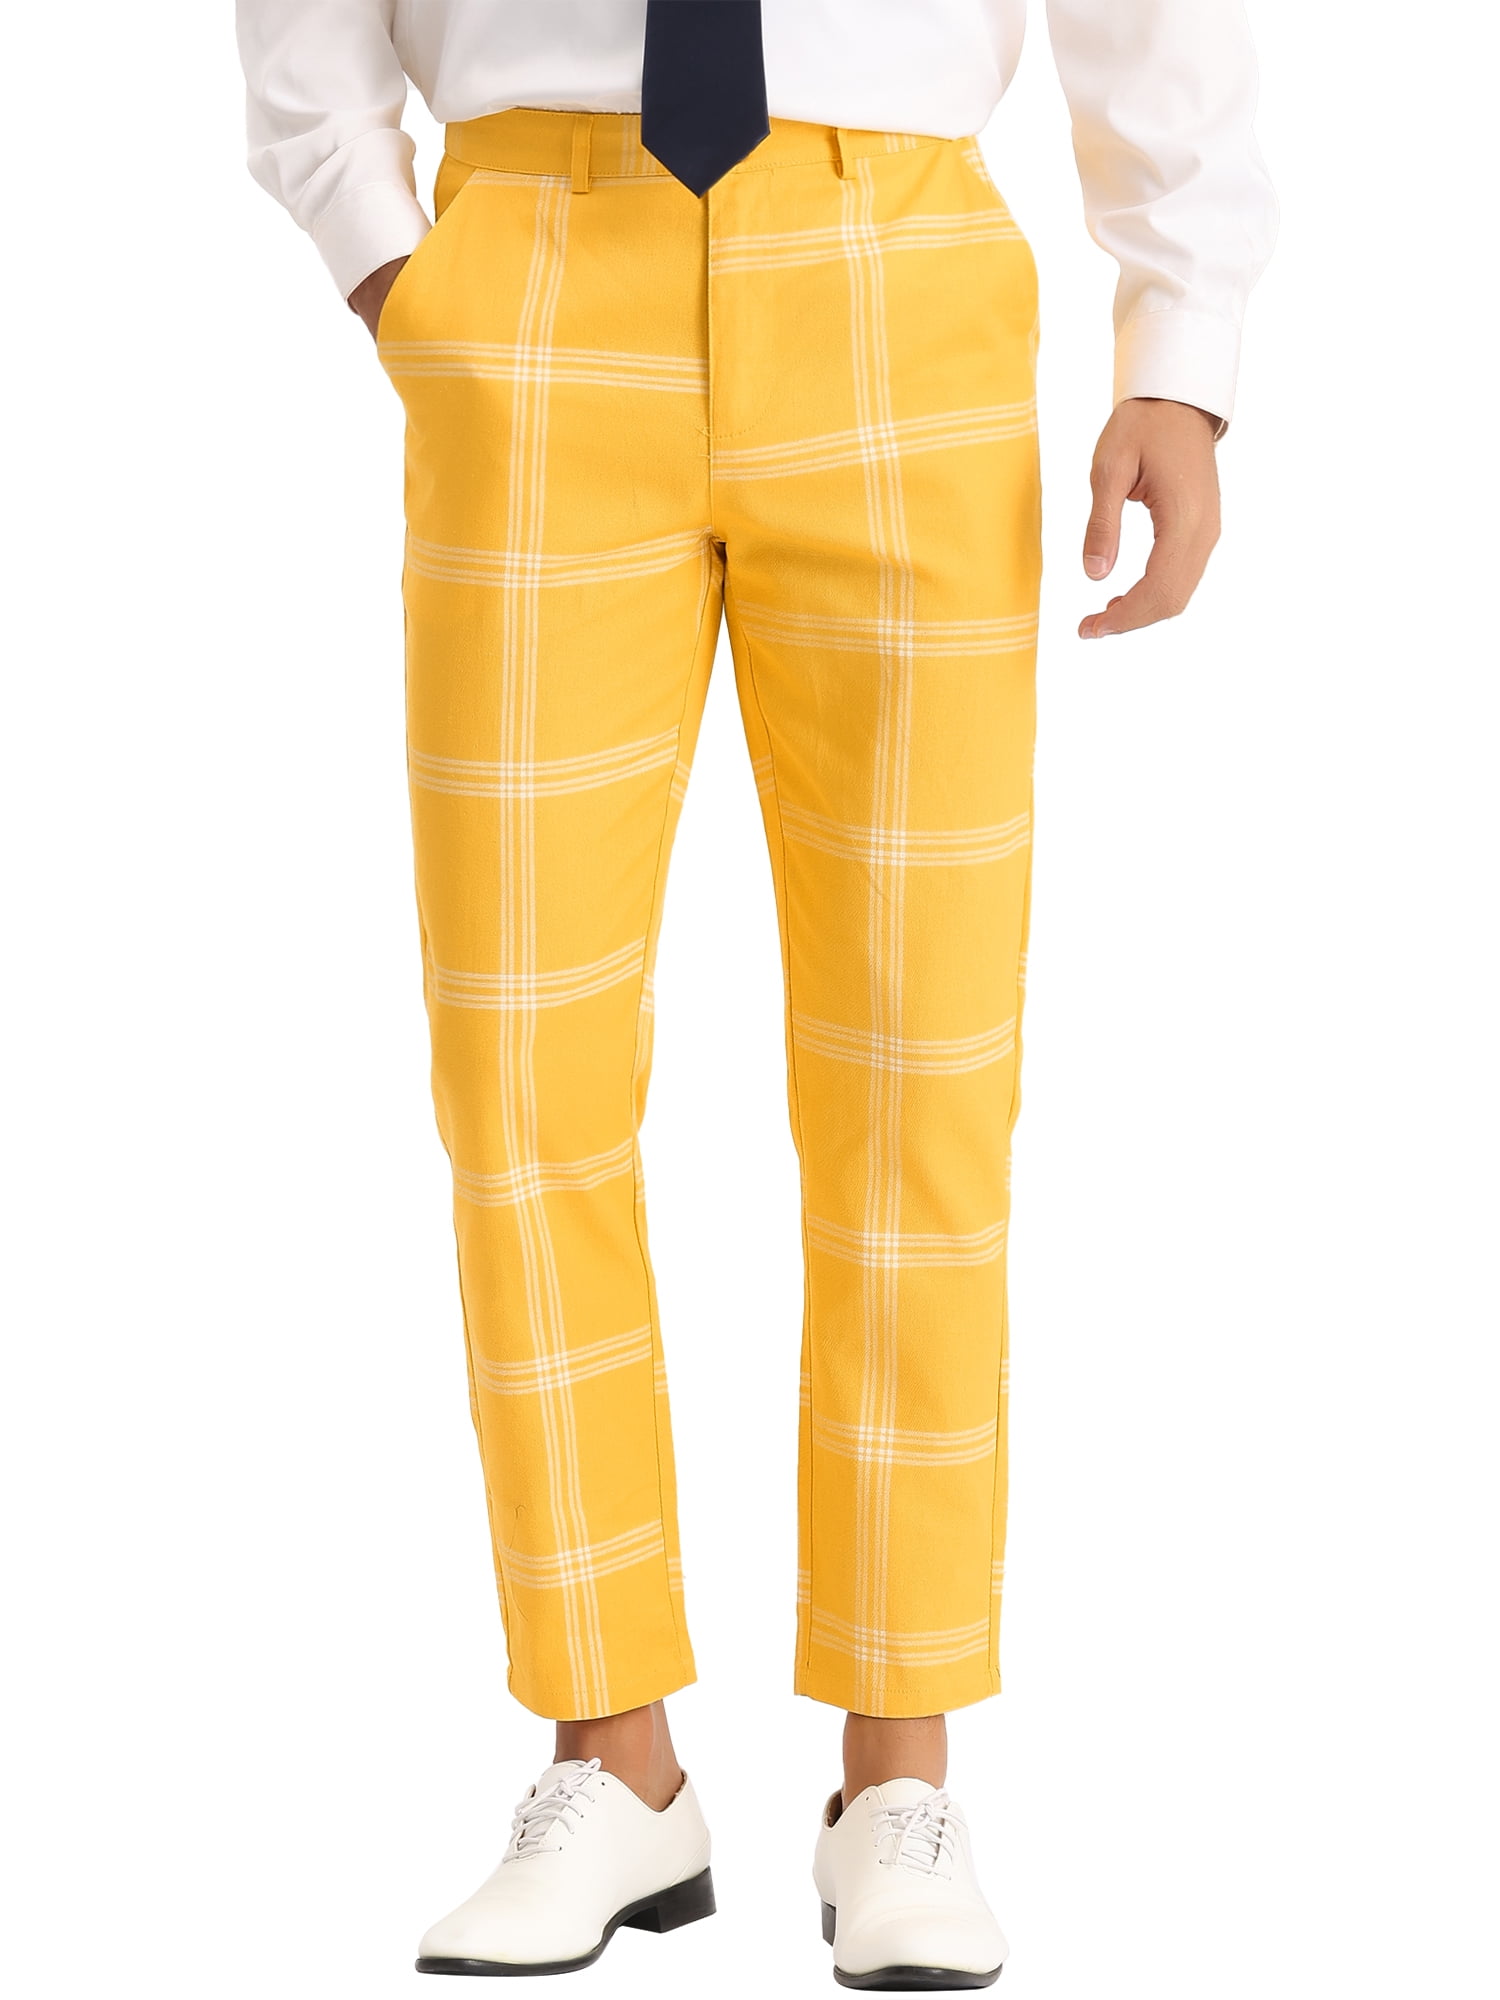 アウトレット通販売 【Fano Studios】Tartan plaid color pants